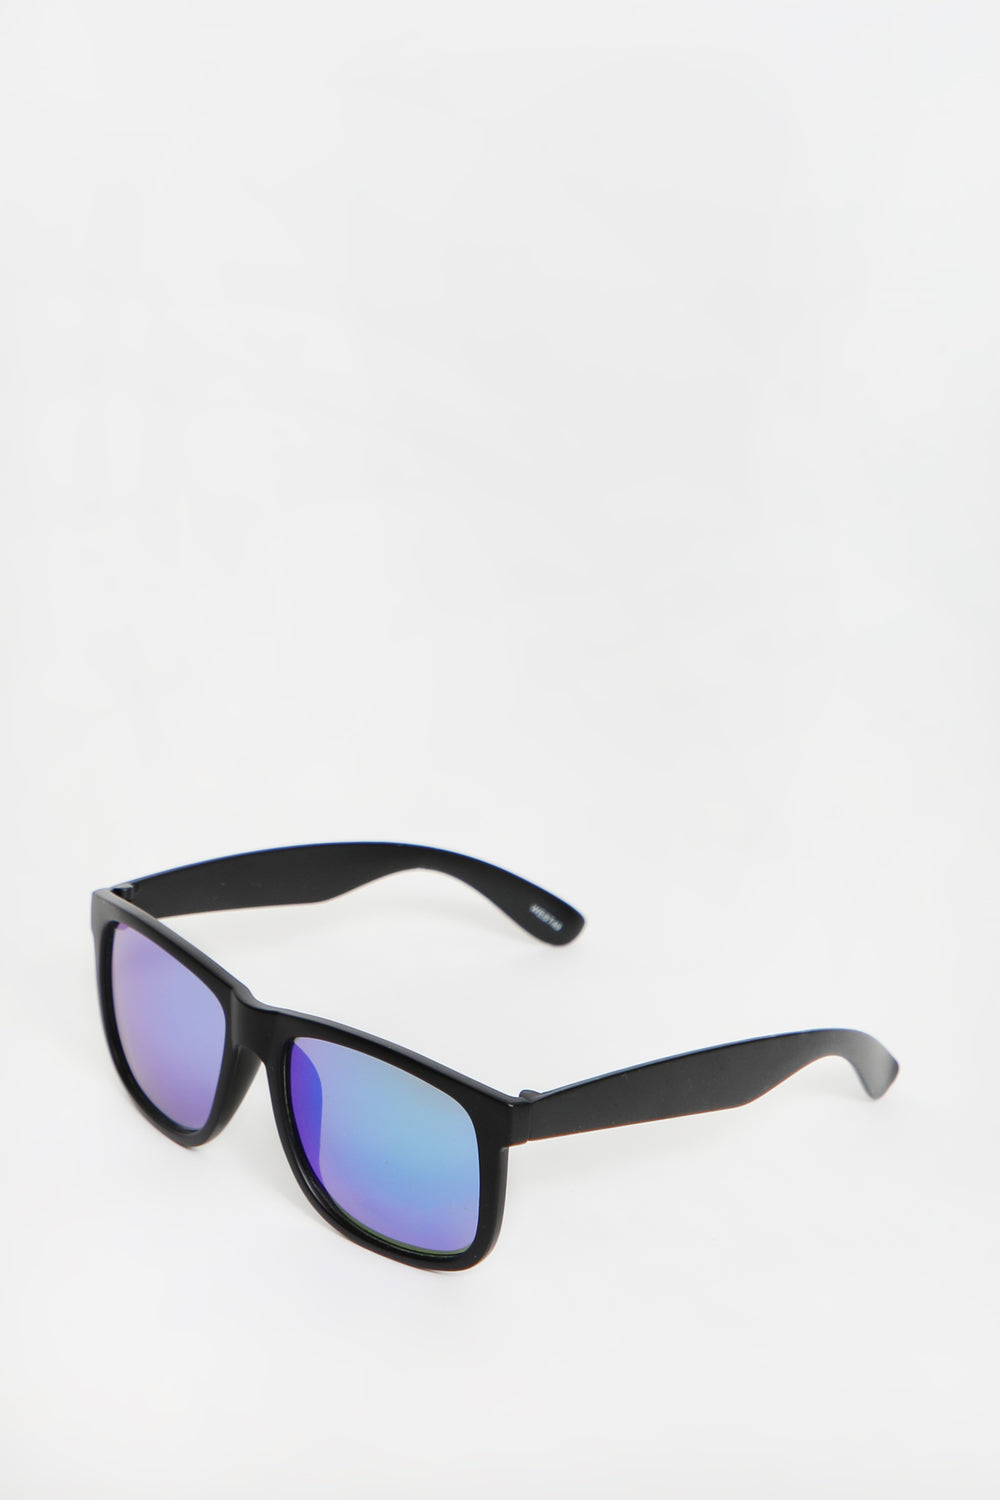 West49 Matte Black Sunglasses West49 Matte Black Sunglasses